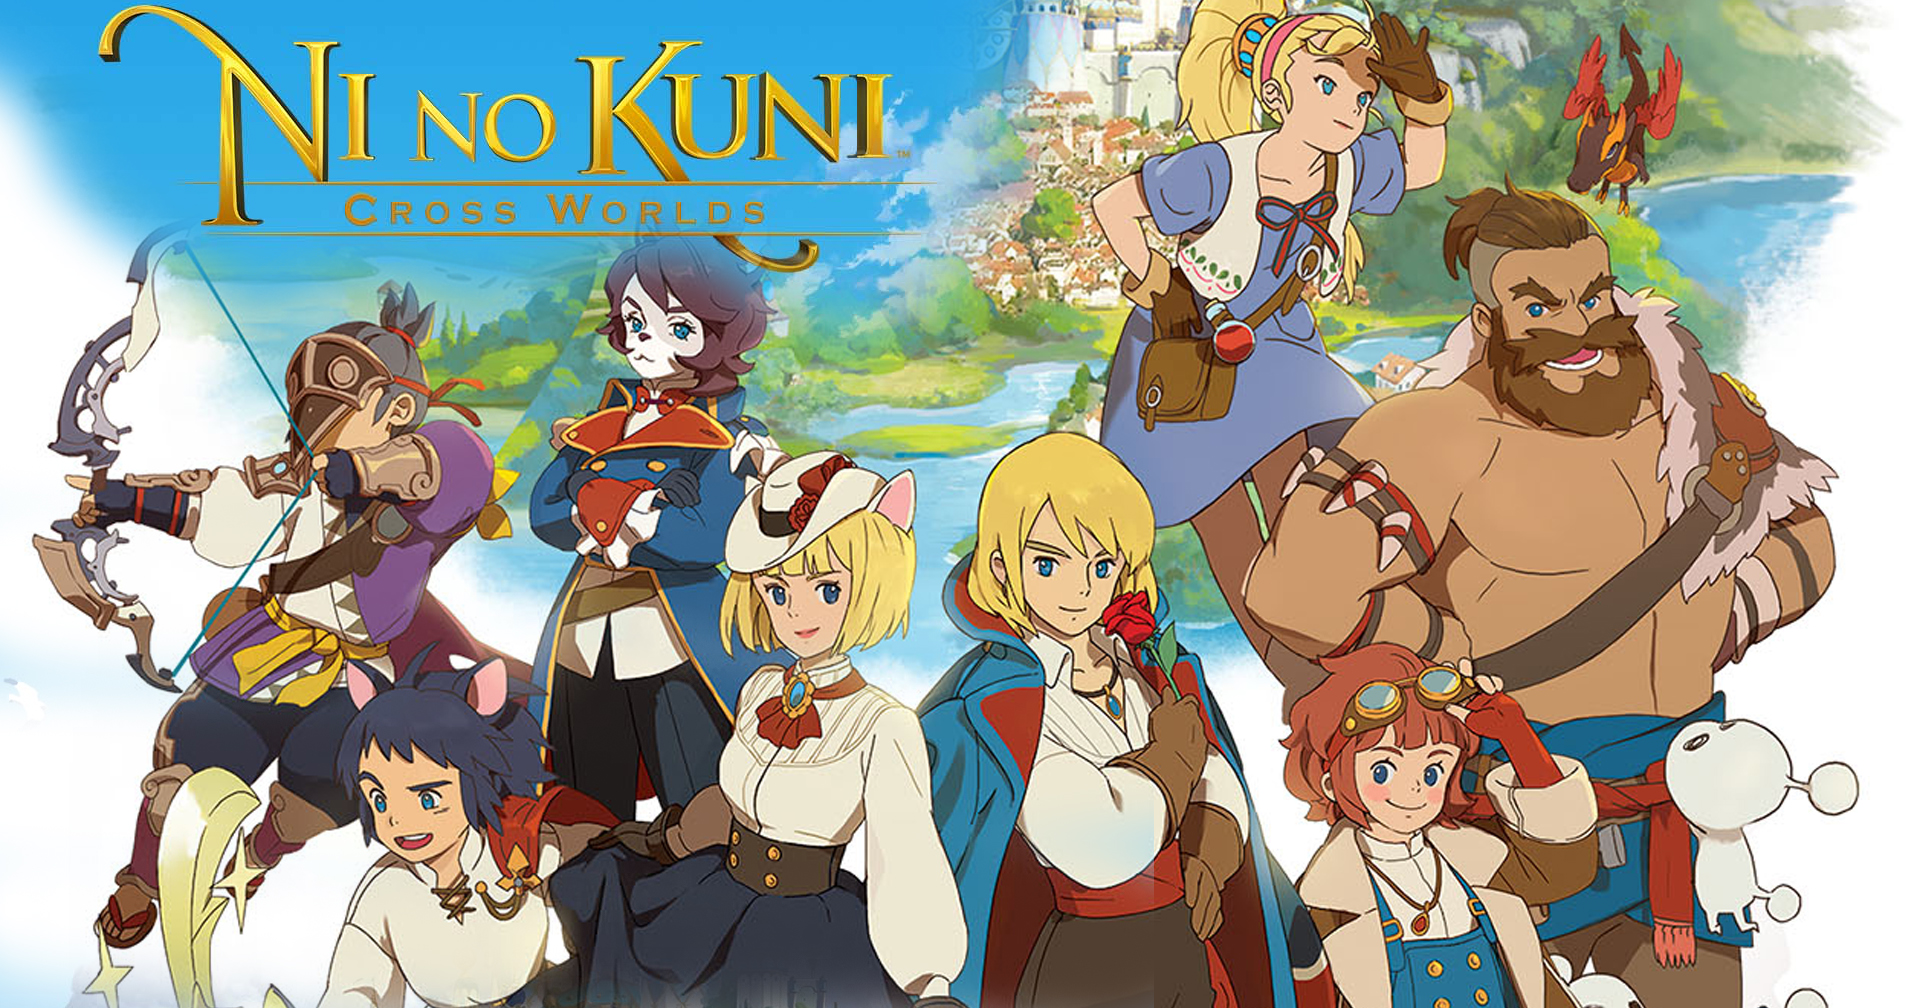 [รีวิวเกม] Ni no Kuni: Cross Worlds เกม MMORPG สเกลใหญ่ เนื้อเรื่องเข้มข้น งานภาพ Ghibli สุดละมุน